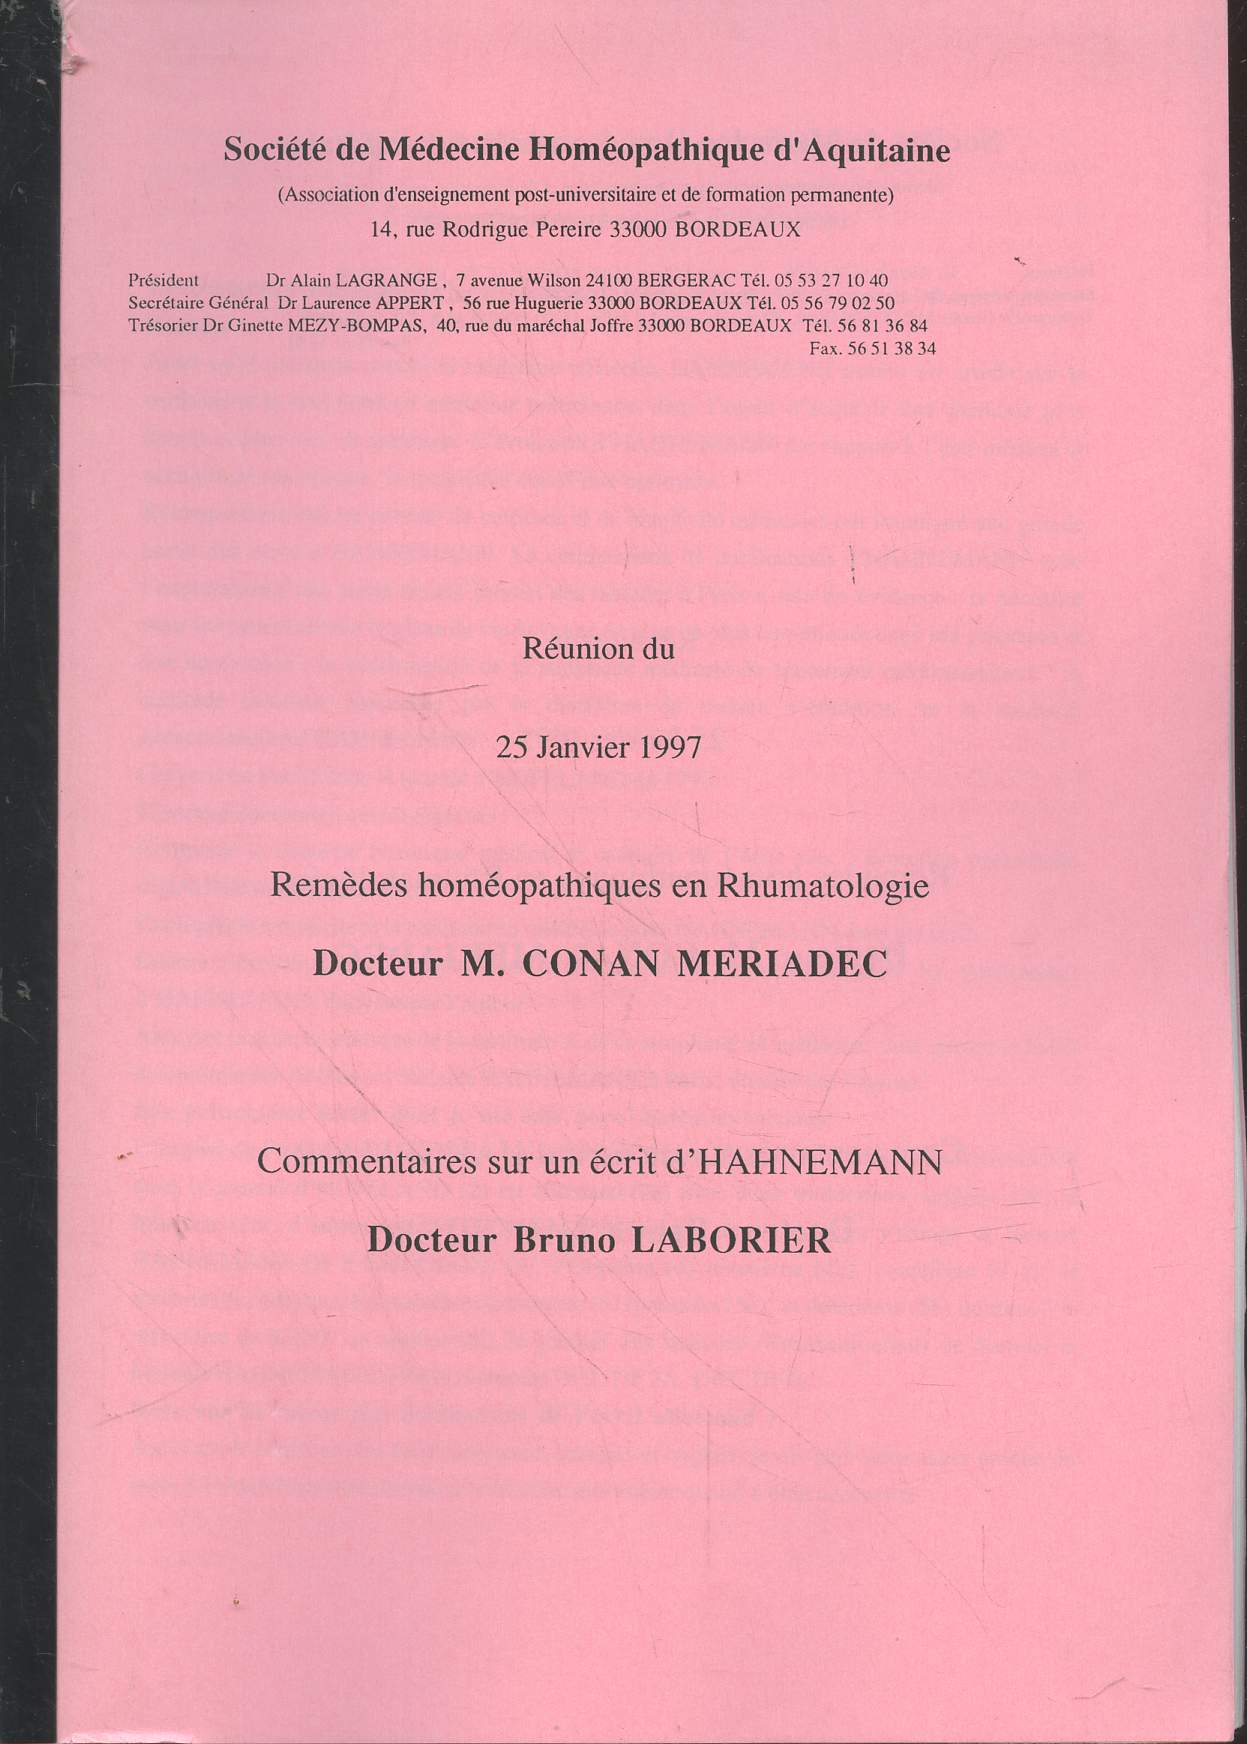 Runion du 25 Janvier 1997 : Remdes homopathiques en Rhumatologie, Commentaires sur un crit d'Hahnemann